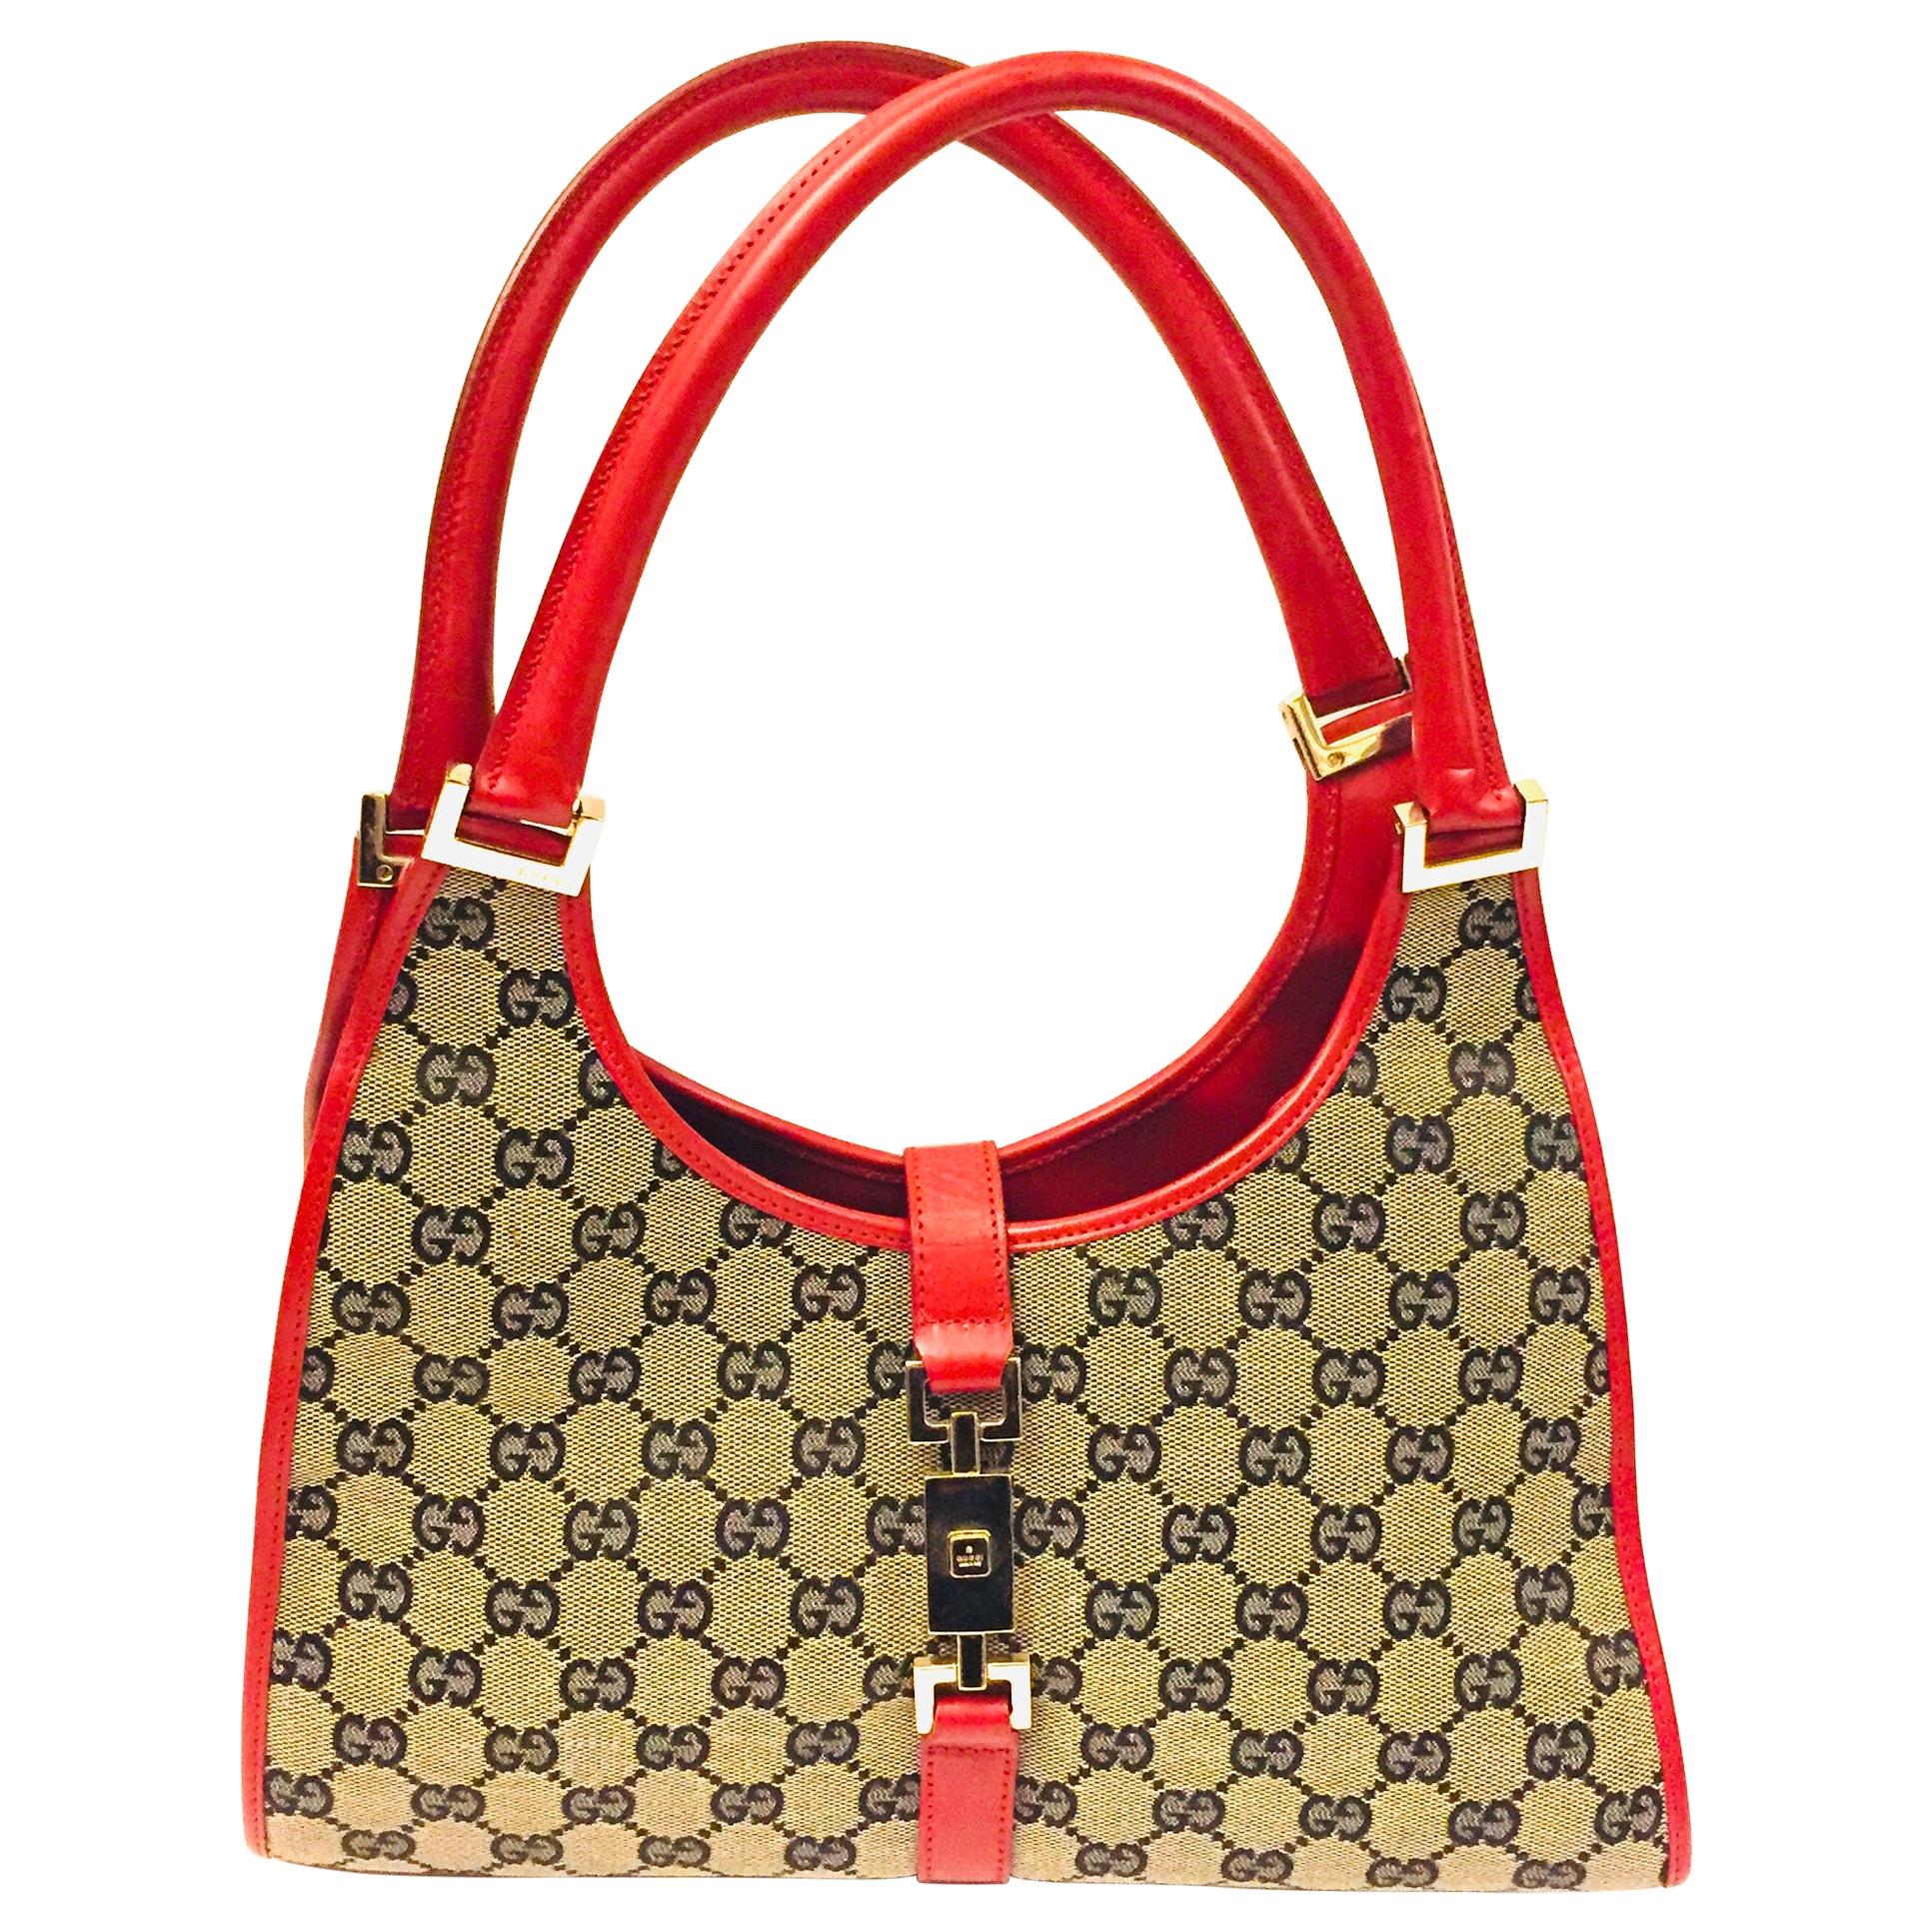 Gucci canvas monogram red piping handbag